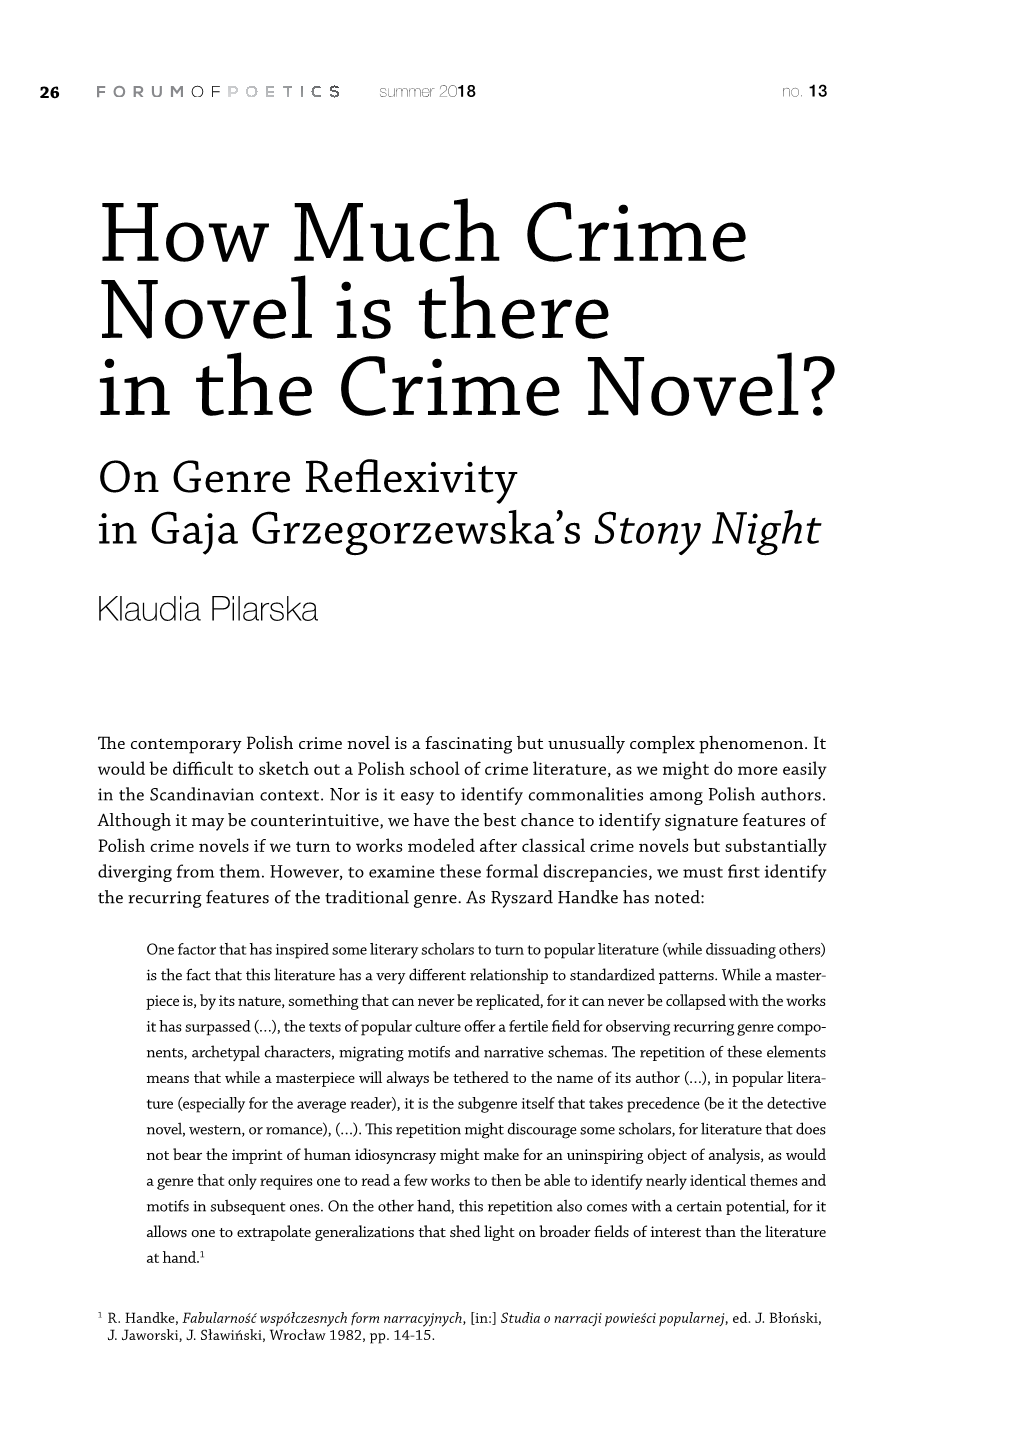 On Genre Reflexivity in Gaja Grzegorzewska's Stony Night